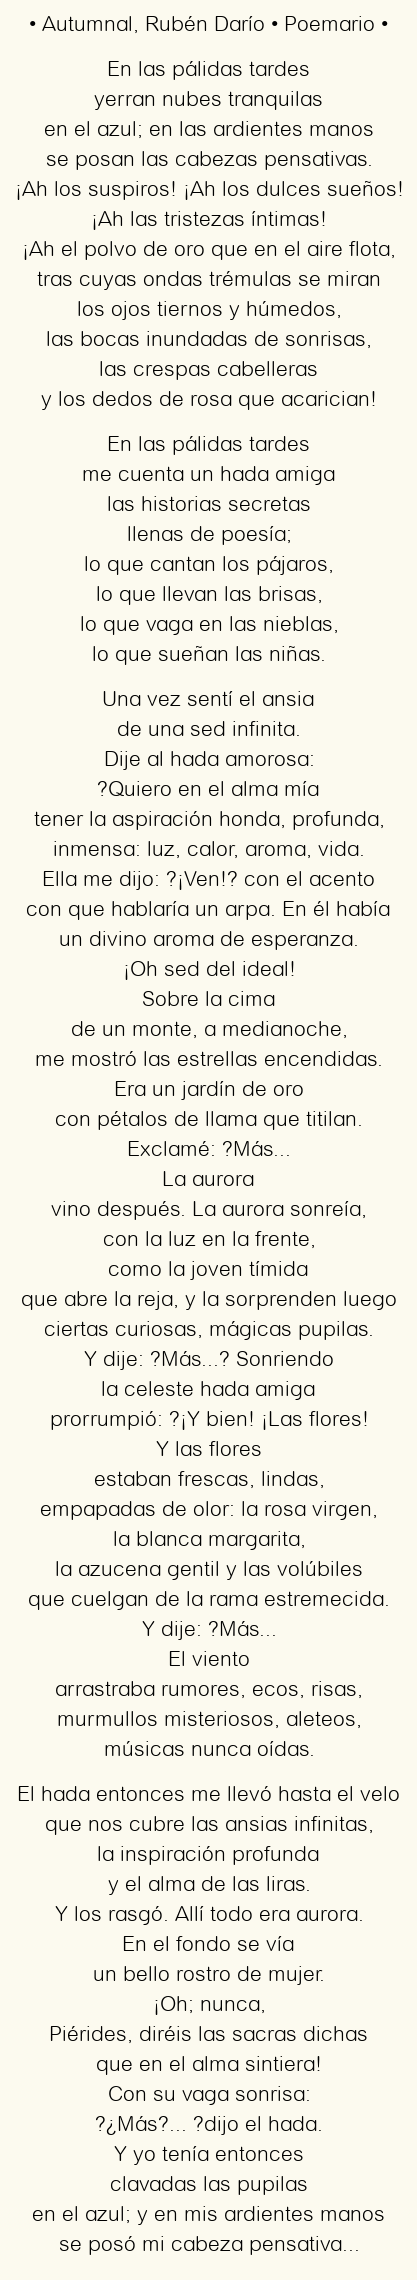 Imagen con el poema Autumnal, por Rubén Darío